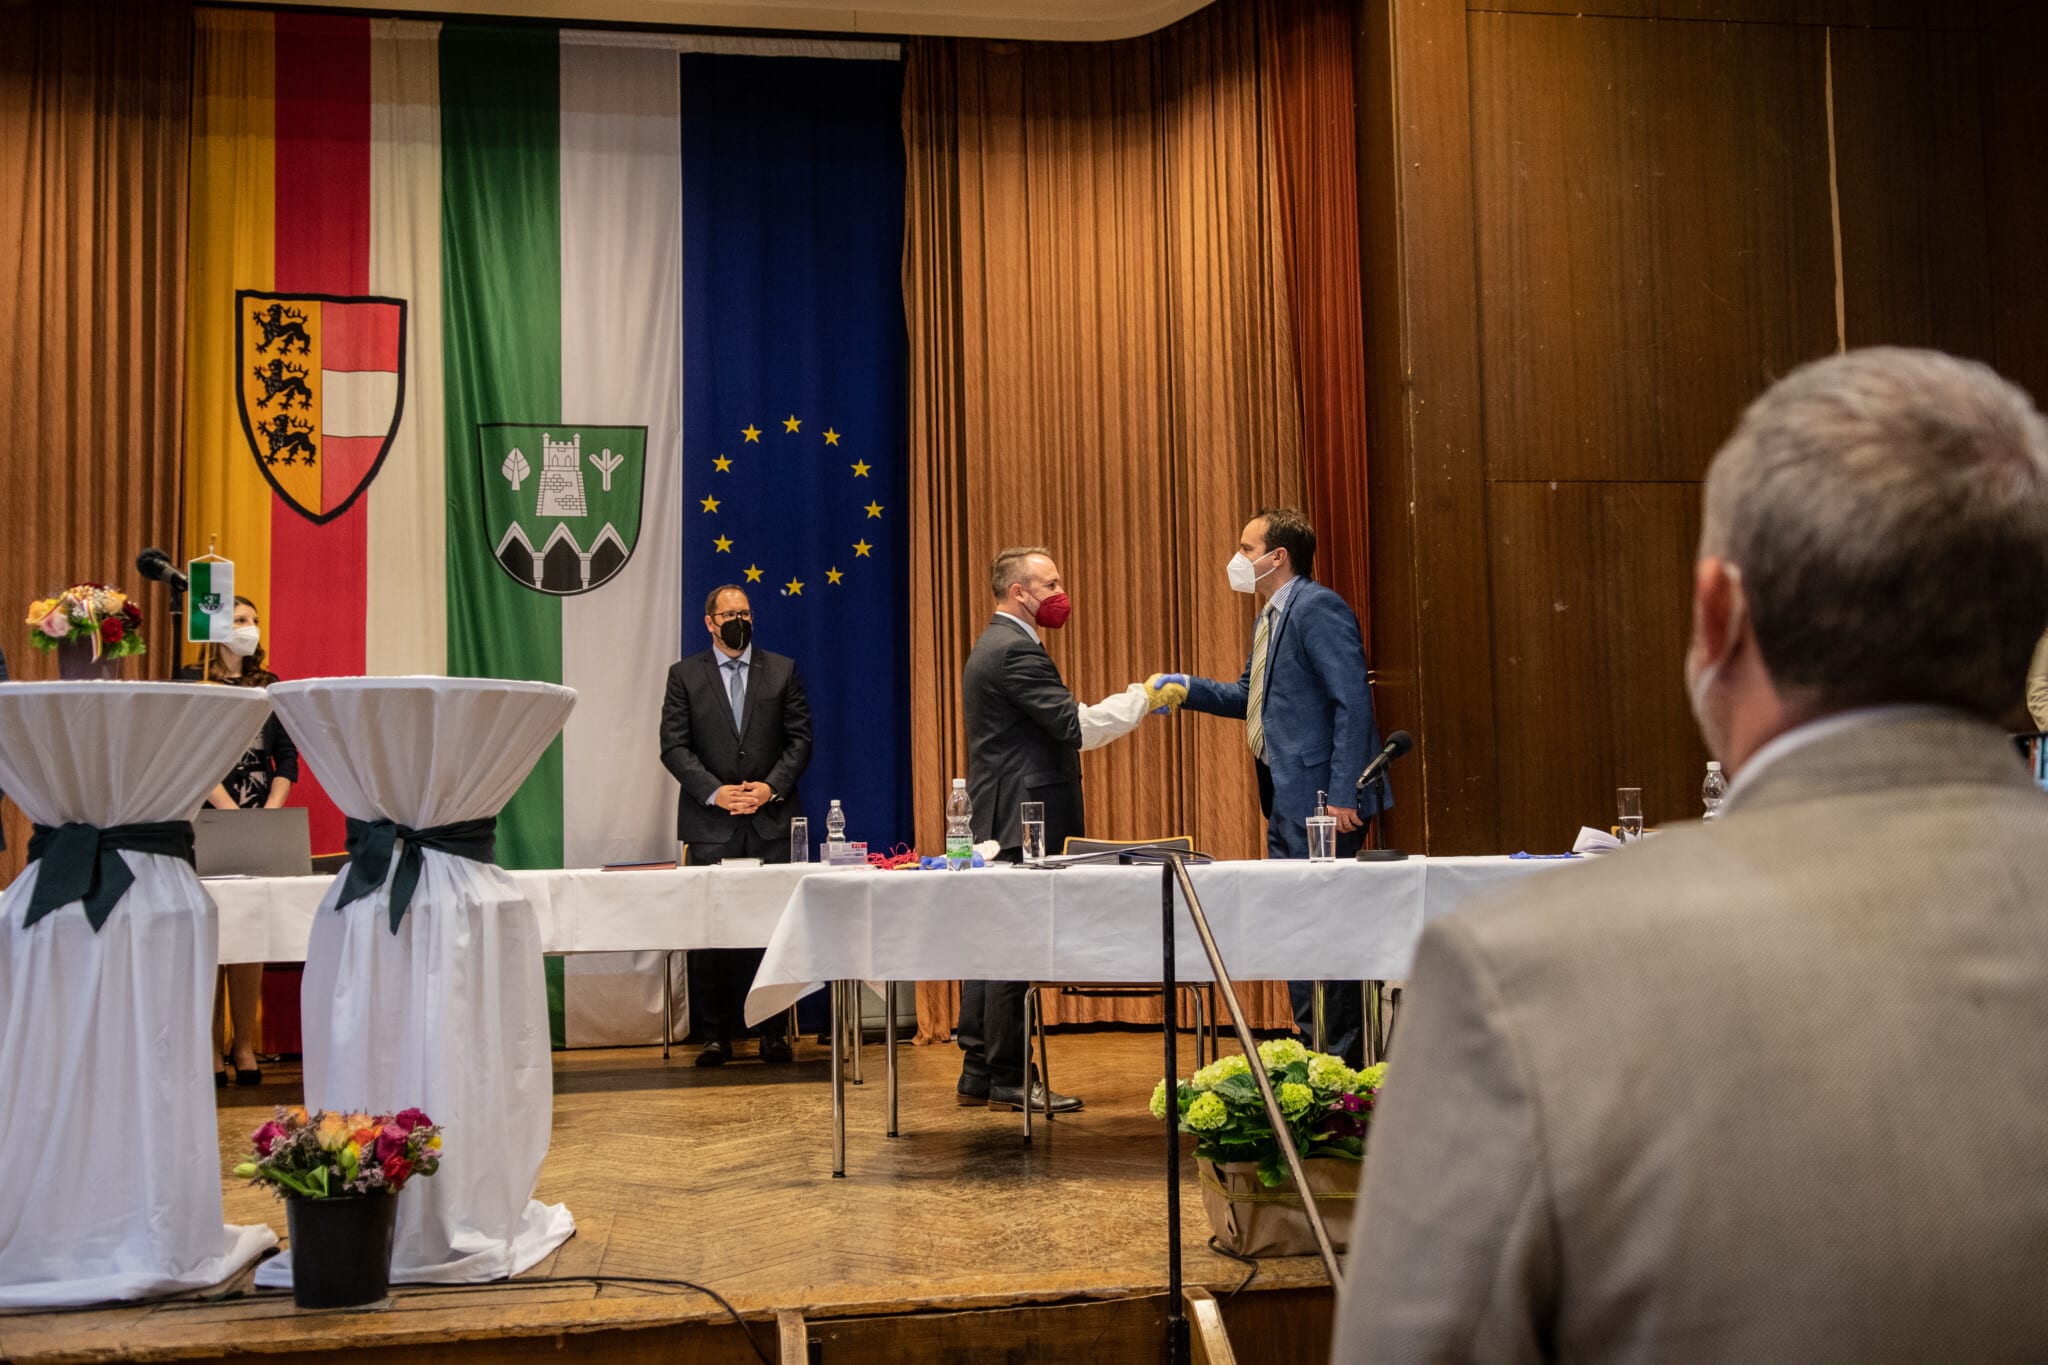 Die Angelobung von Bürgermeister Günther Vallant erfolgte gestern durch Bezirkshauptmann Georg Fejan.